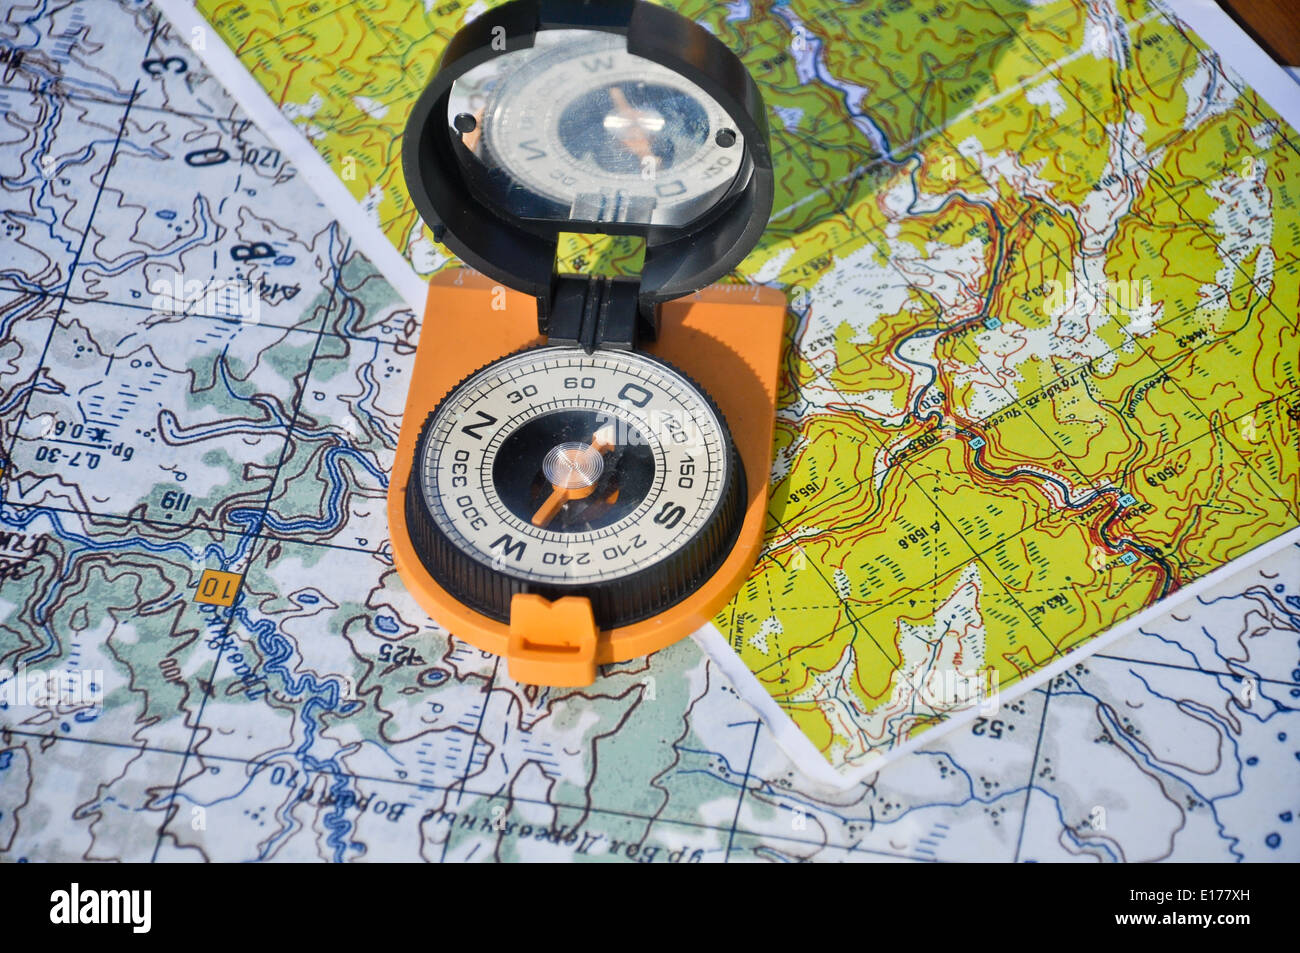 Boussole Orange rétroviseur se trouve sur des cartes topographiques. Boussole sur la carte Banque D'Images